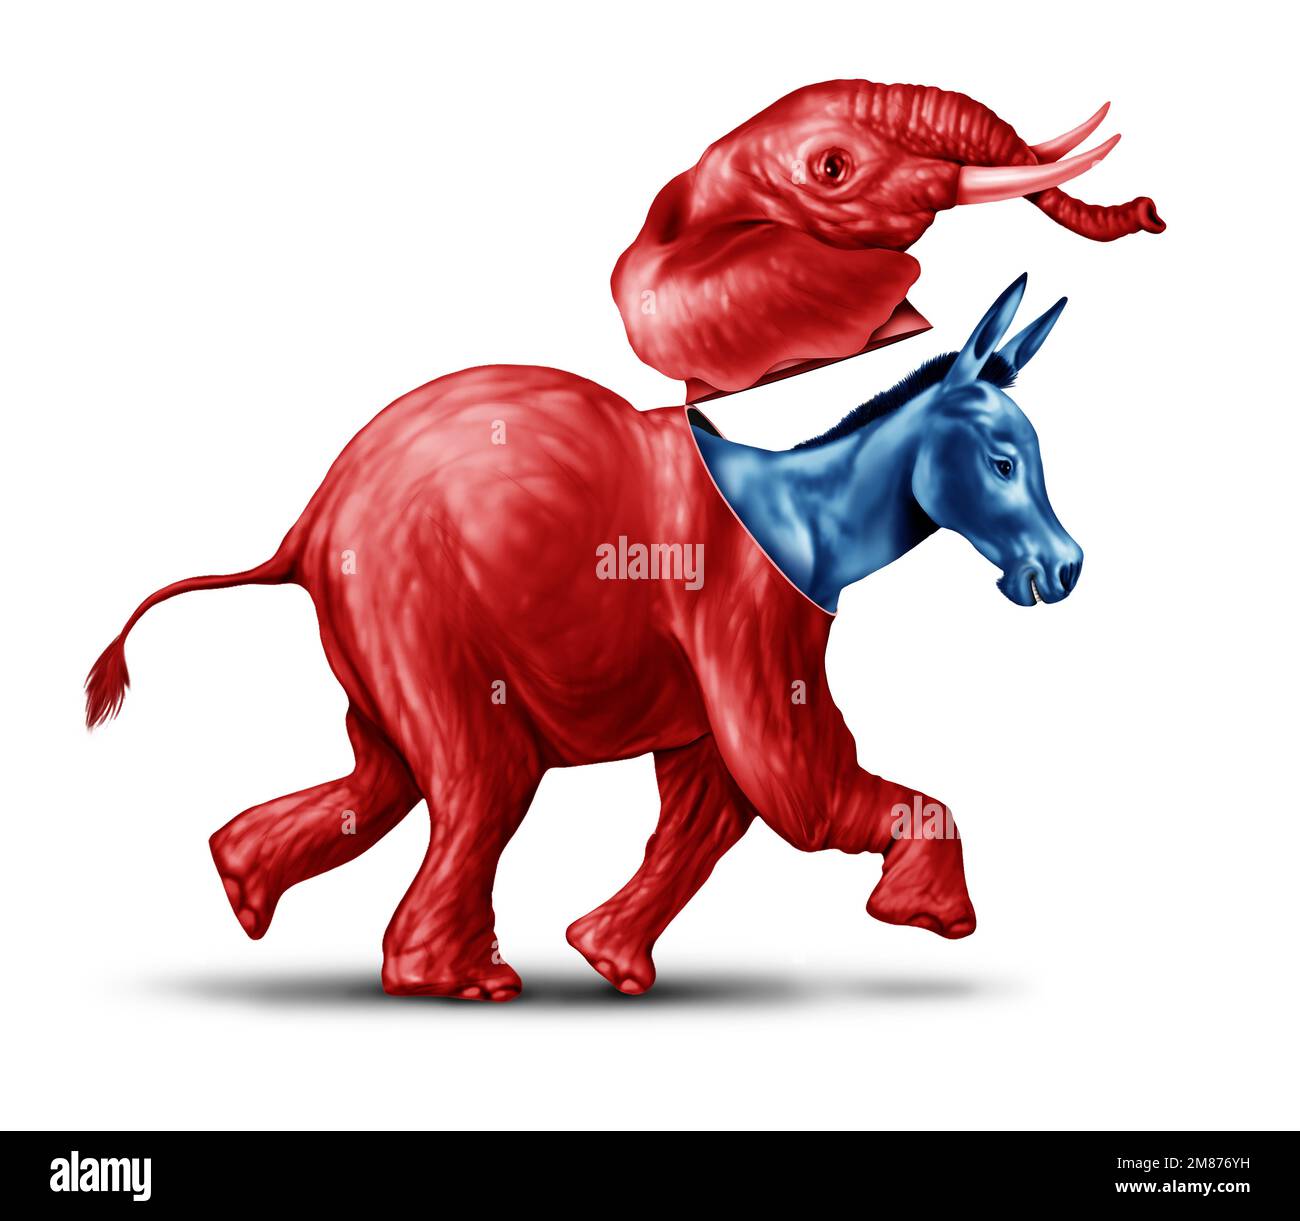 Falso conservatore o armadio liberale come un asino blu fingendo o mascherando come un elefante rosso in una campagna elettorale americana come un simbolo Foto Stock